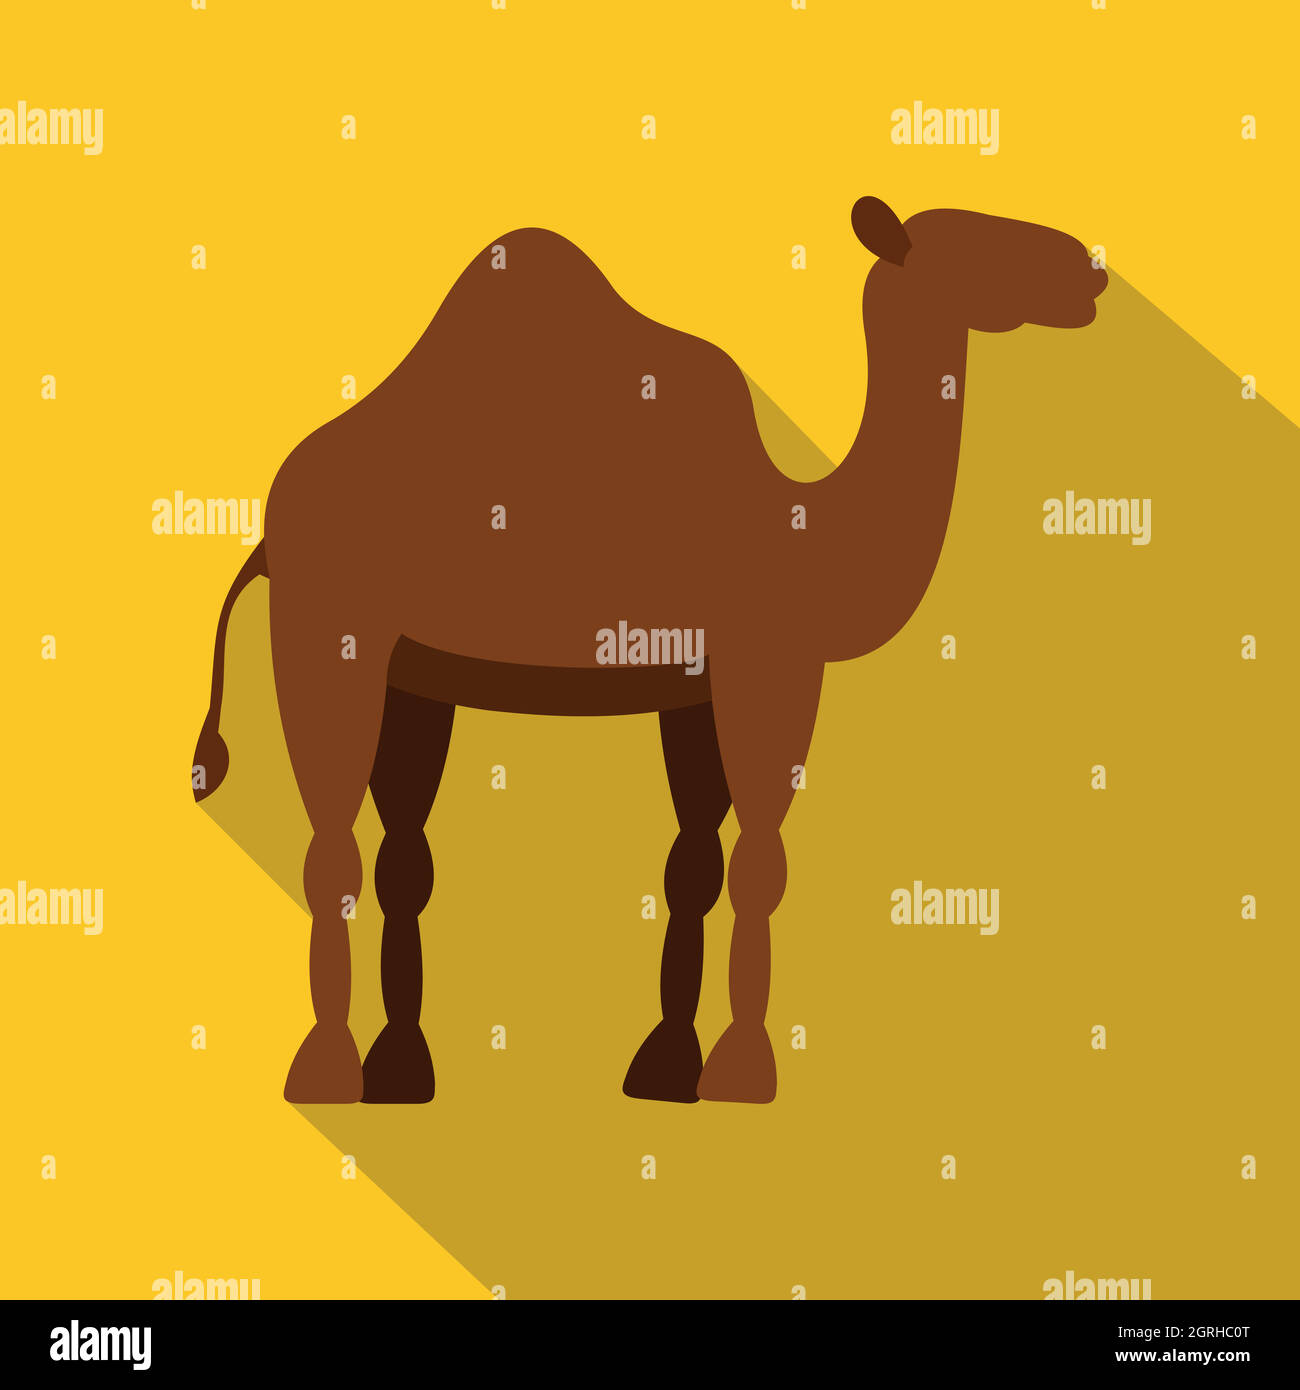 Dromedary camel icon, flat style Stock Vector